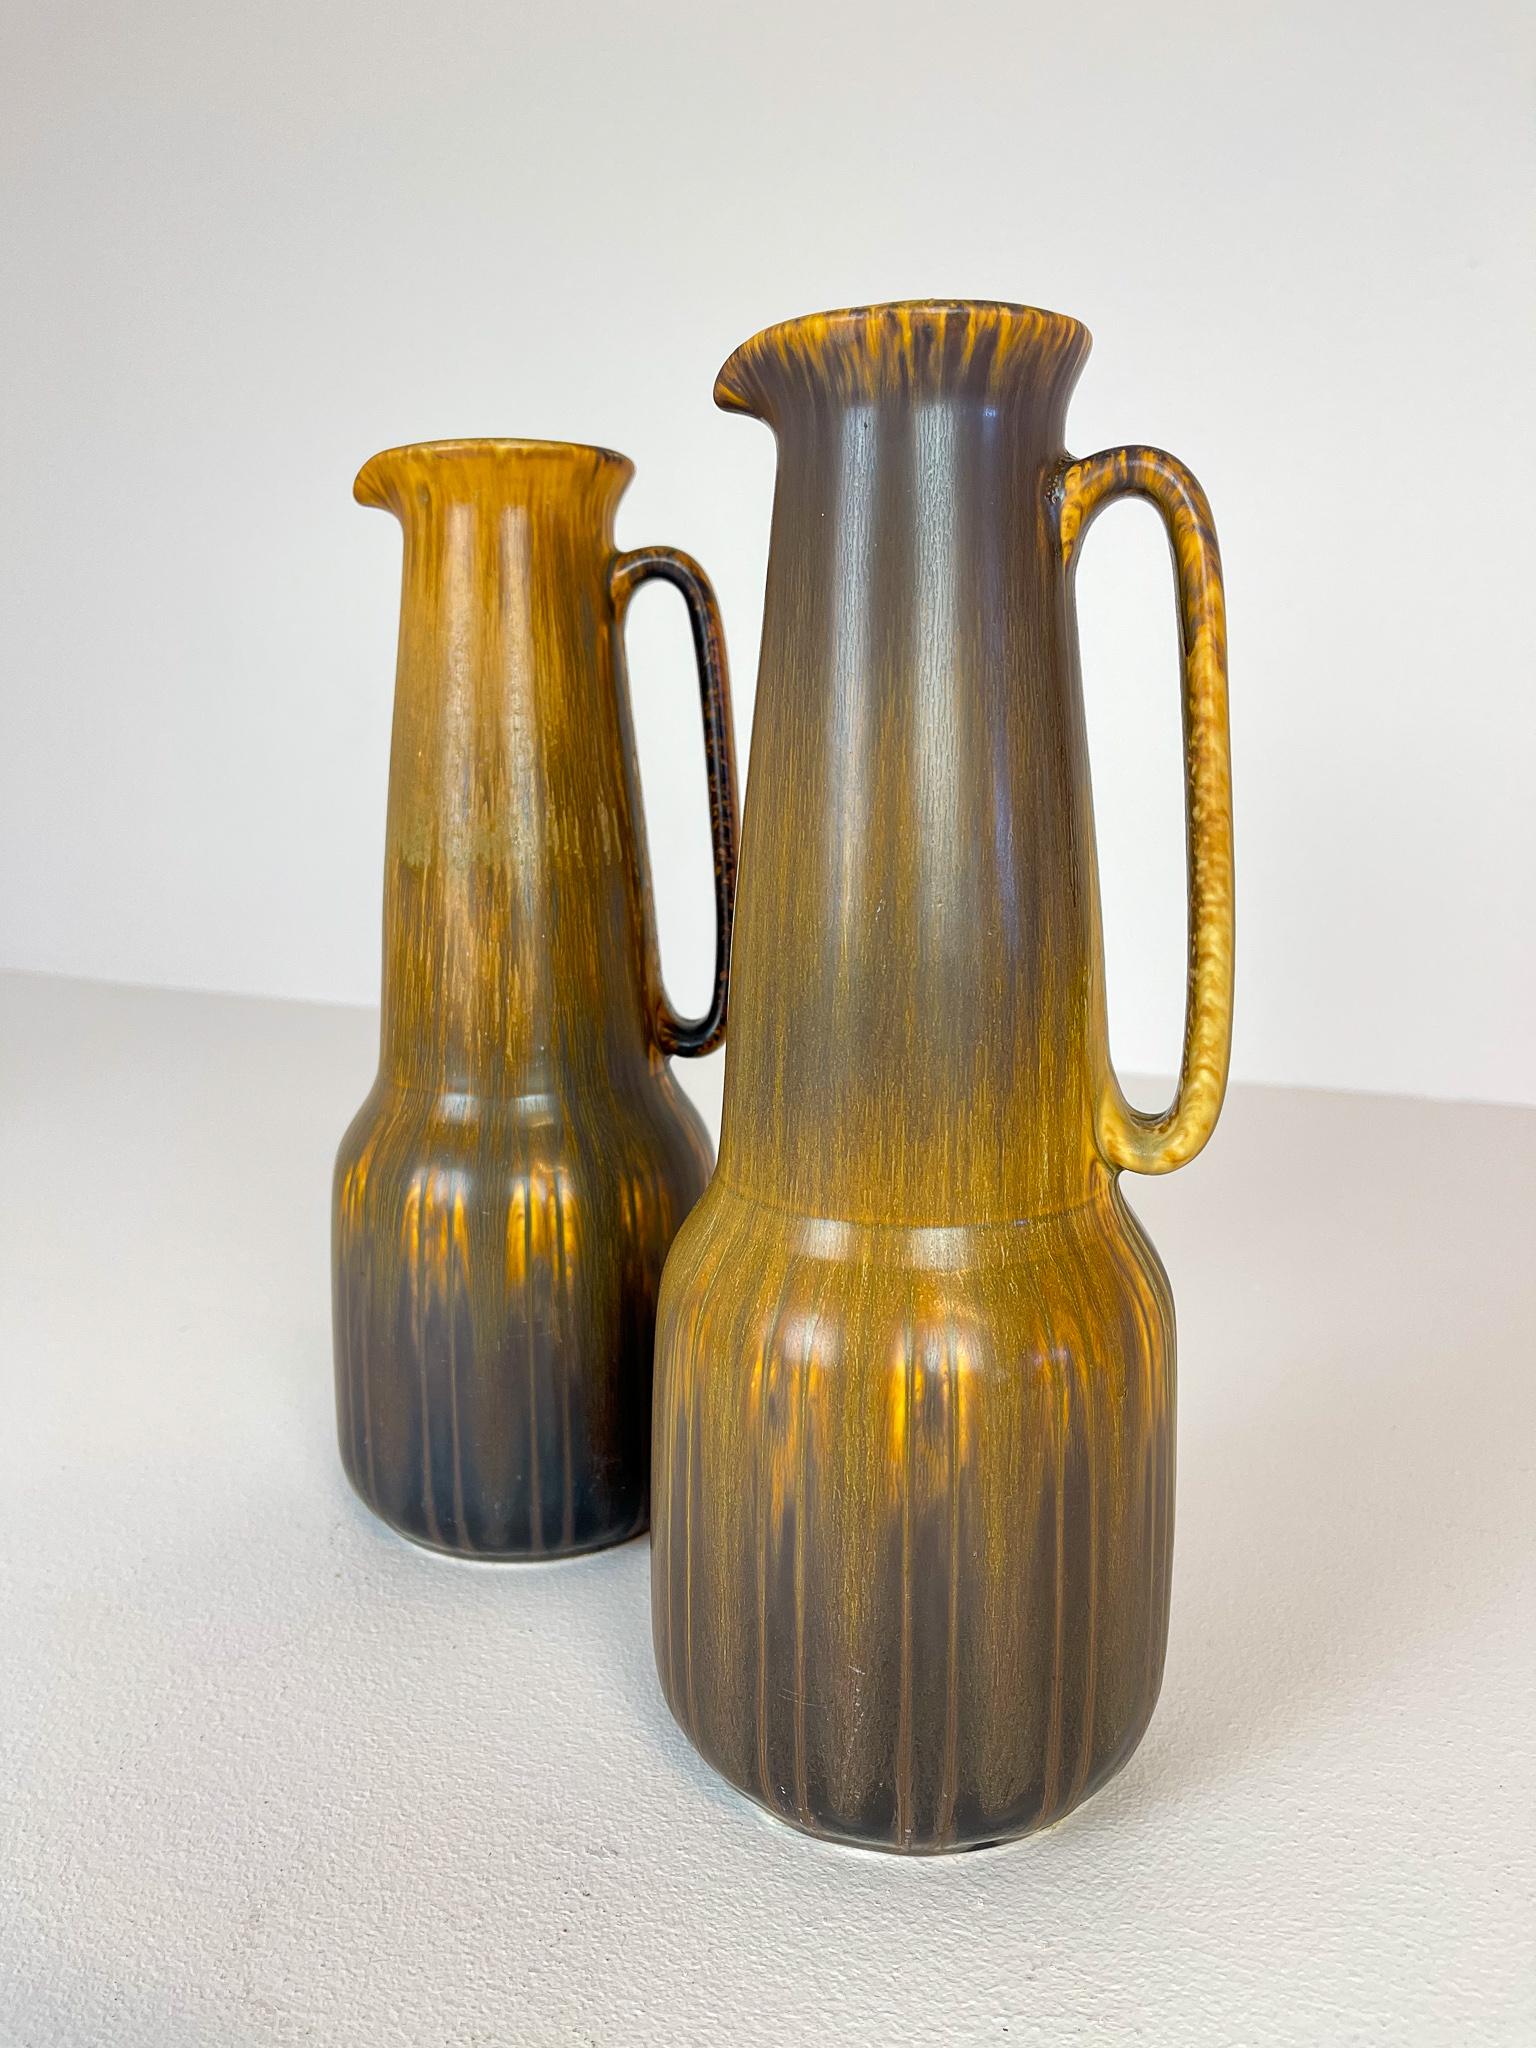 Diese beiden wunderschönen Vasen wurden von Gunnar Nylund in den 1950er Jahren in der Rörstrand-Fabrik in Schweden entworfen und hergestellt. Diese Vasen sind nicht so oft als Paar zu sehen, und mit ihrer wunderbaren Glasur sind sie ein schönes